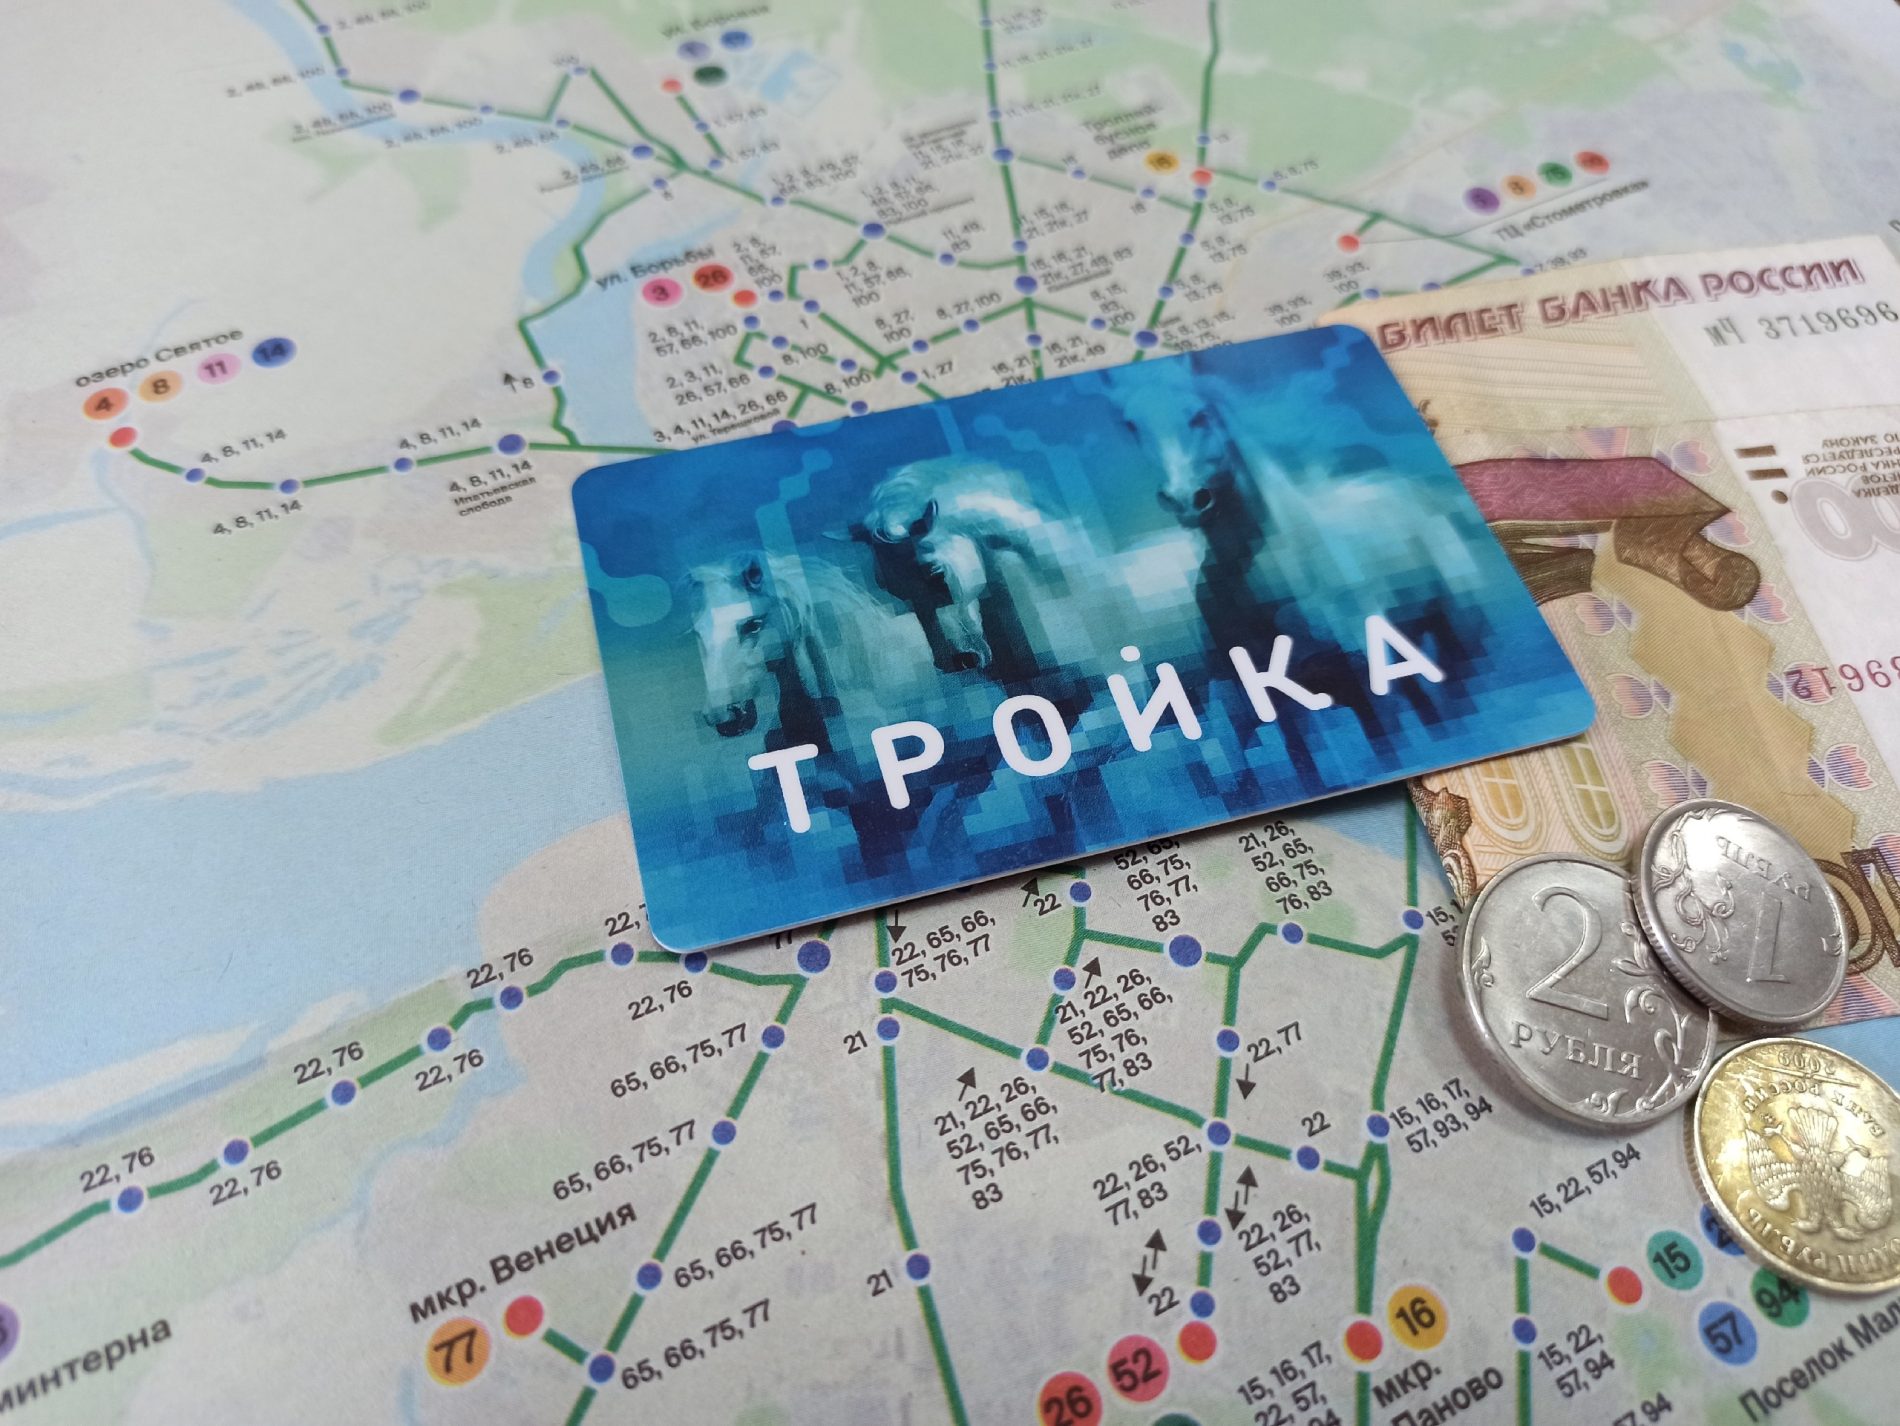 Стало известно, кому в Костроме достанутся бонусные карты «Тройка» для оплаты проезда